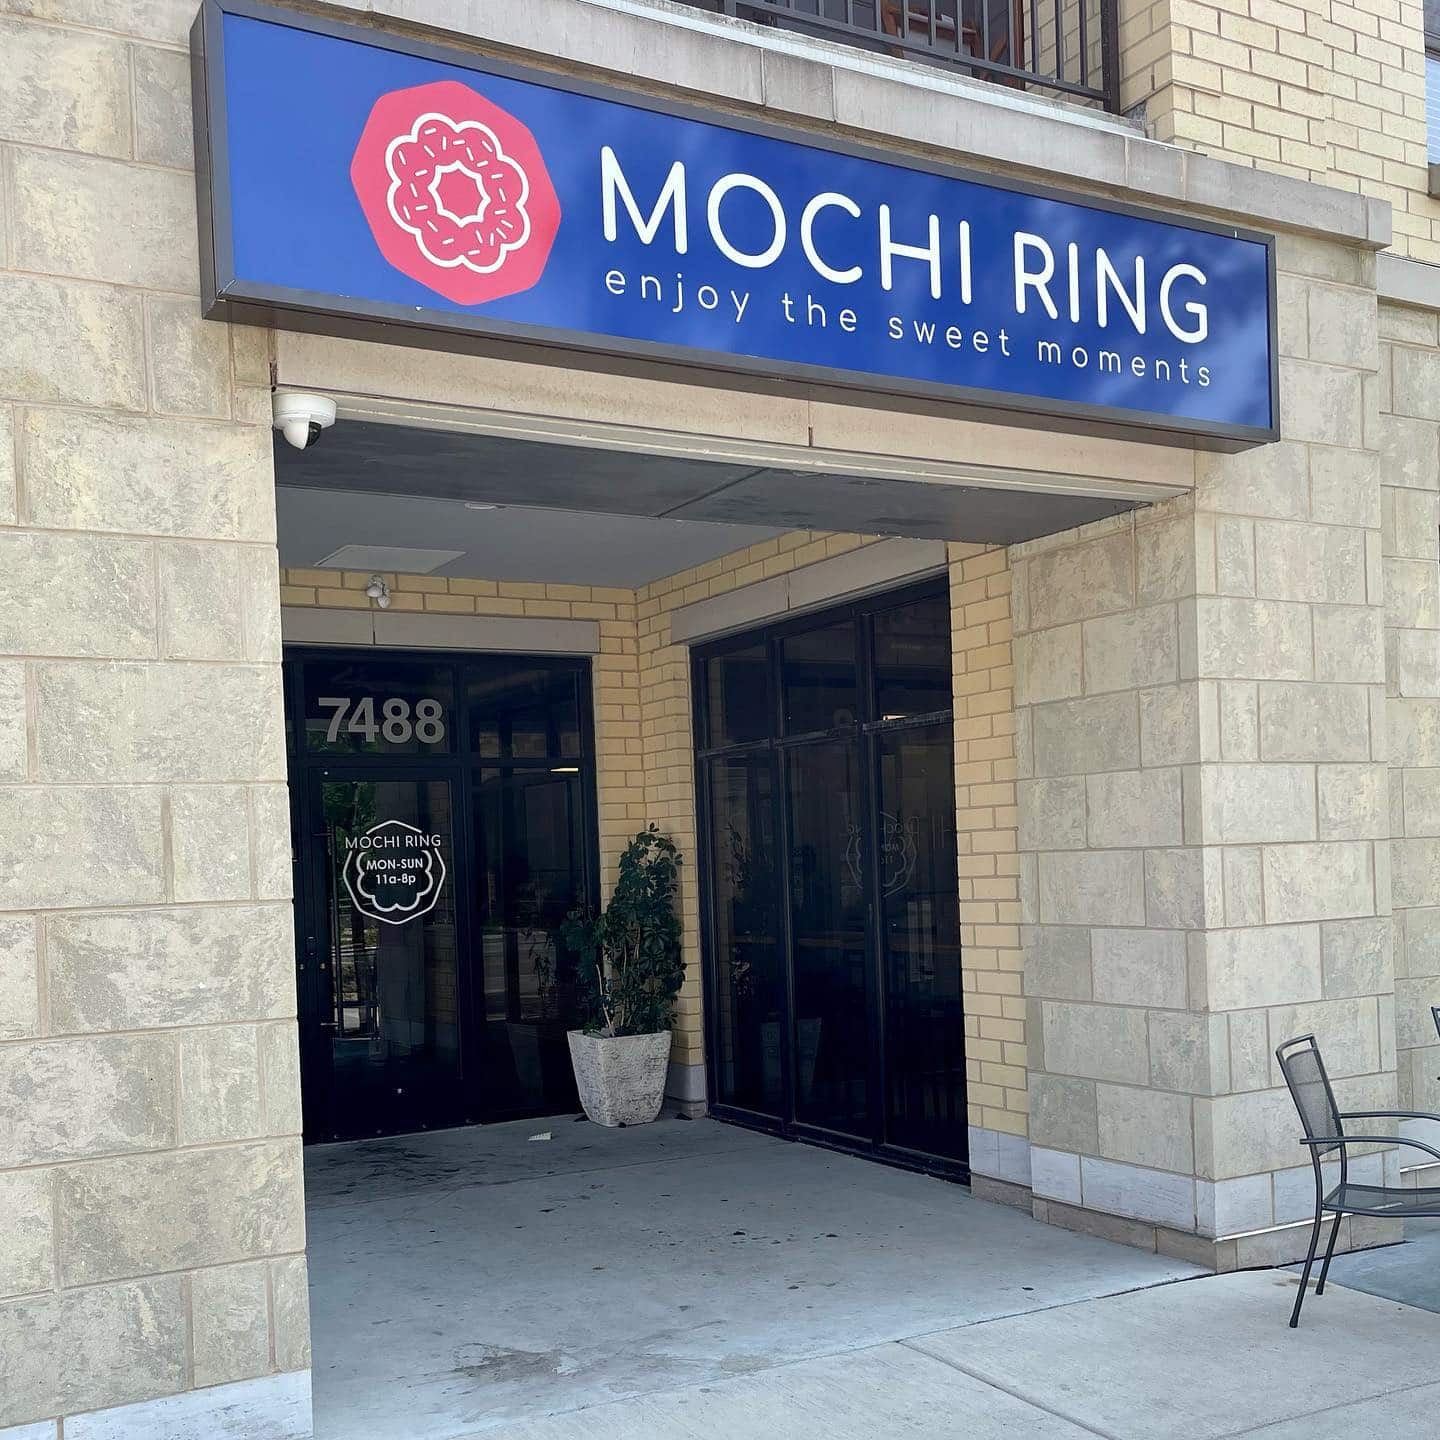 Mochi Ring building